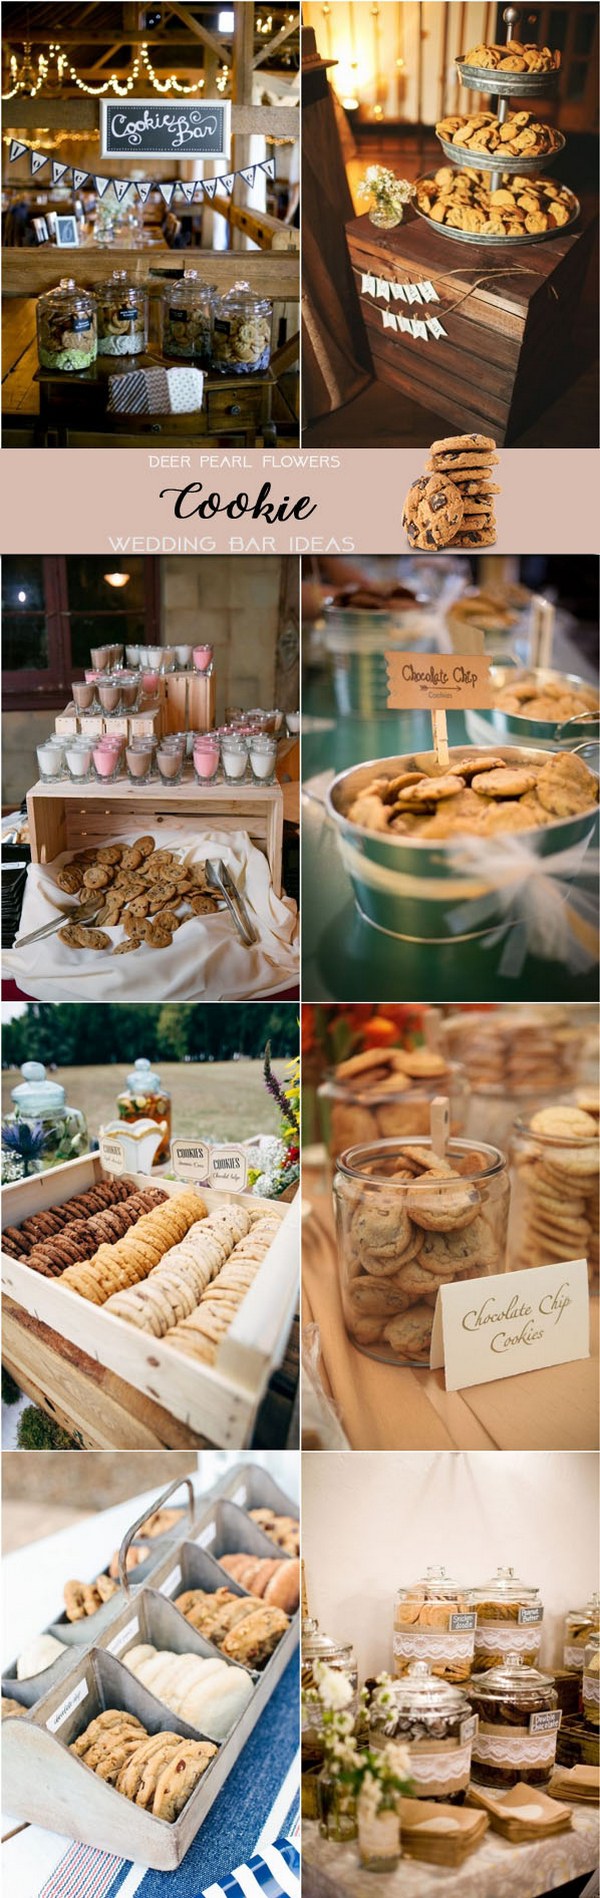 Rustic cookie wedding dessert food bar ideas for wedding reception